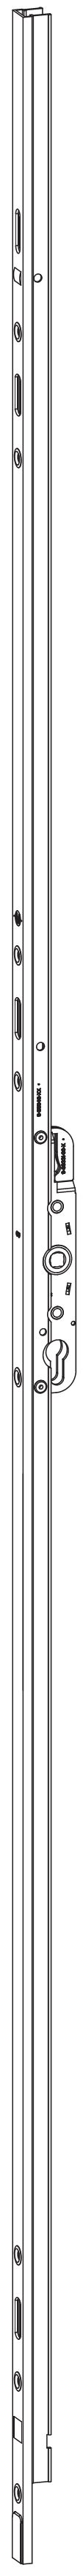 GU-ITALIA -  Cremonese HS 934 - 937 per alzante scorrevole altezza maniglia fissa con chiusura a perni - gr / dim. A PERNI DI CHIUSURA - entrata 37,5 - alt. man. 1000 - lbb/hbb 1840 - 2330